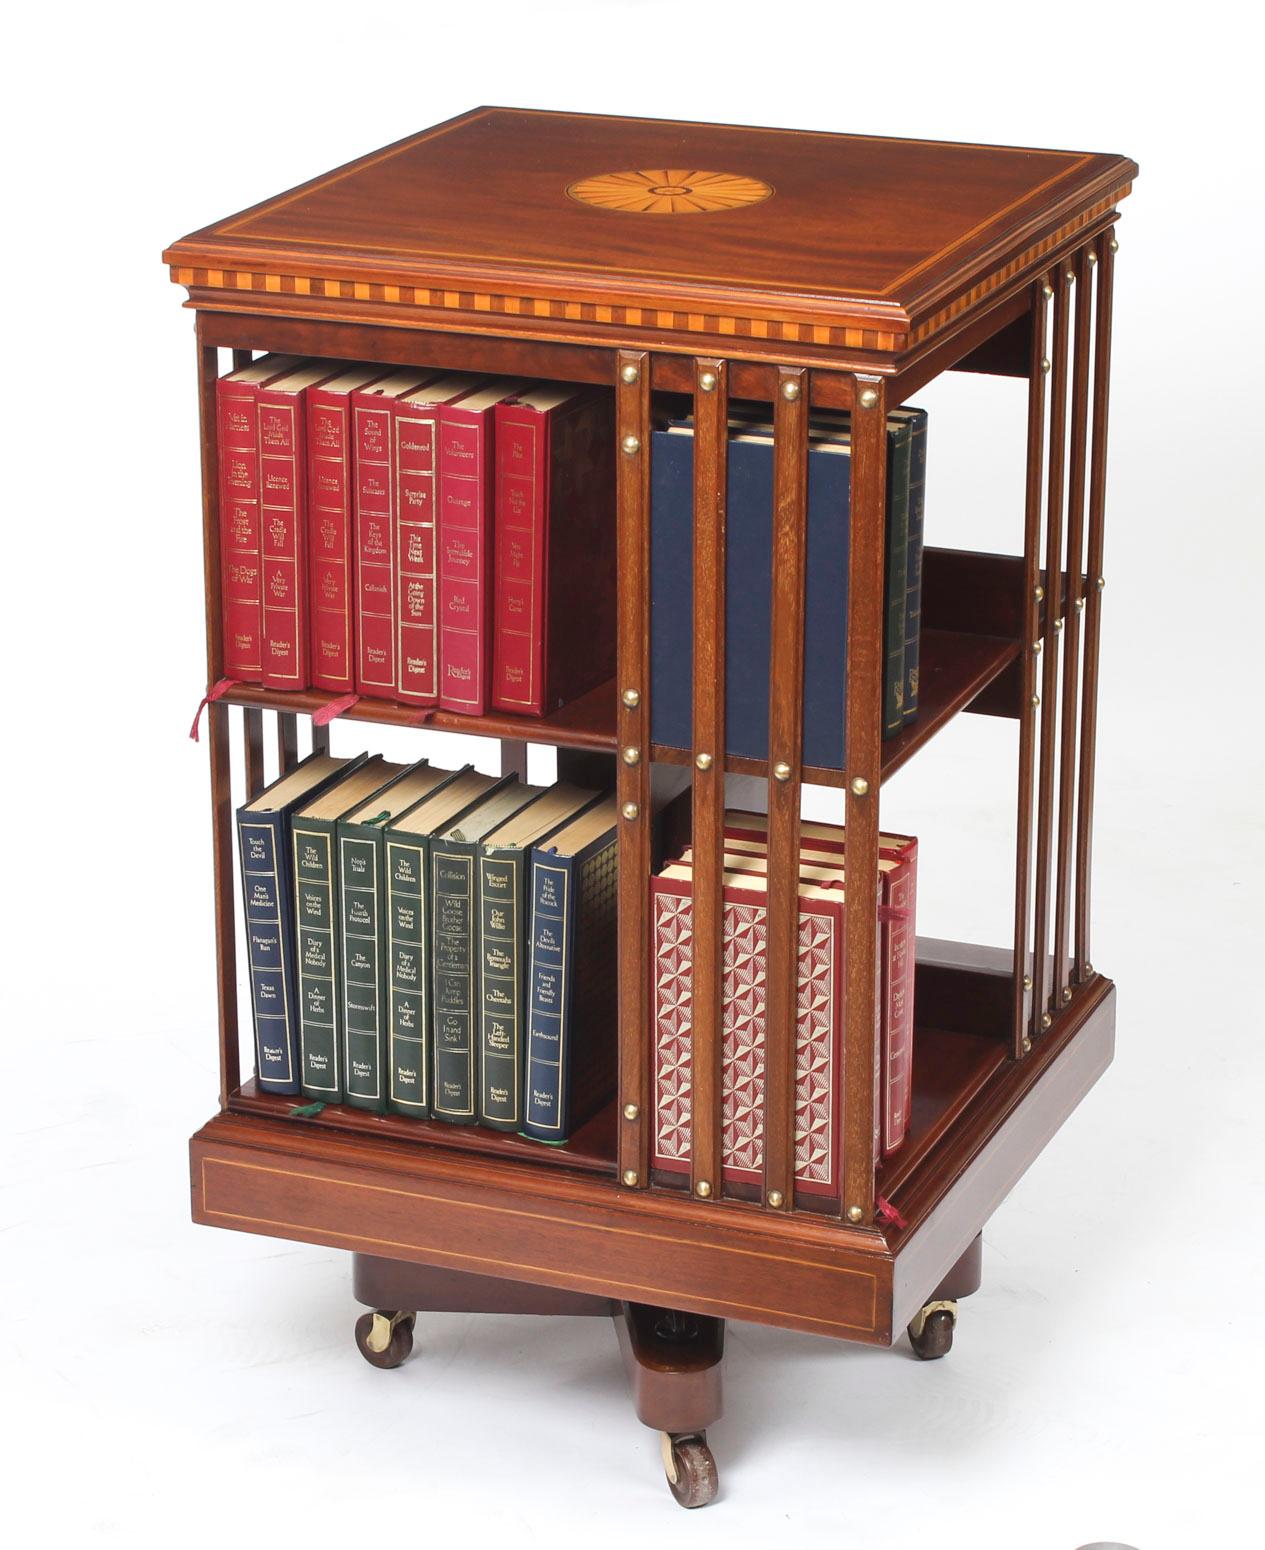 Dies ist ein exquisites antikes drehbares Bücherregal des renommierten viktorianischen Einzelhändlers und Herstellers Maple & Co. aus der Zeit um 1900. 

Er ist aus Mahagoni gefertigt:: dreht sich auf einem massiven gusseisernen Sockel:: hat oben